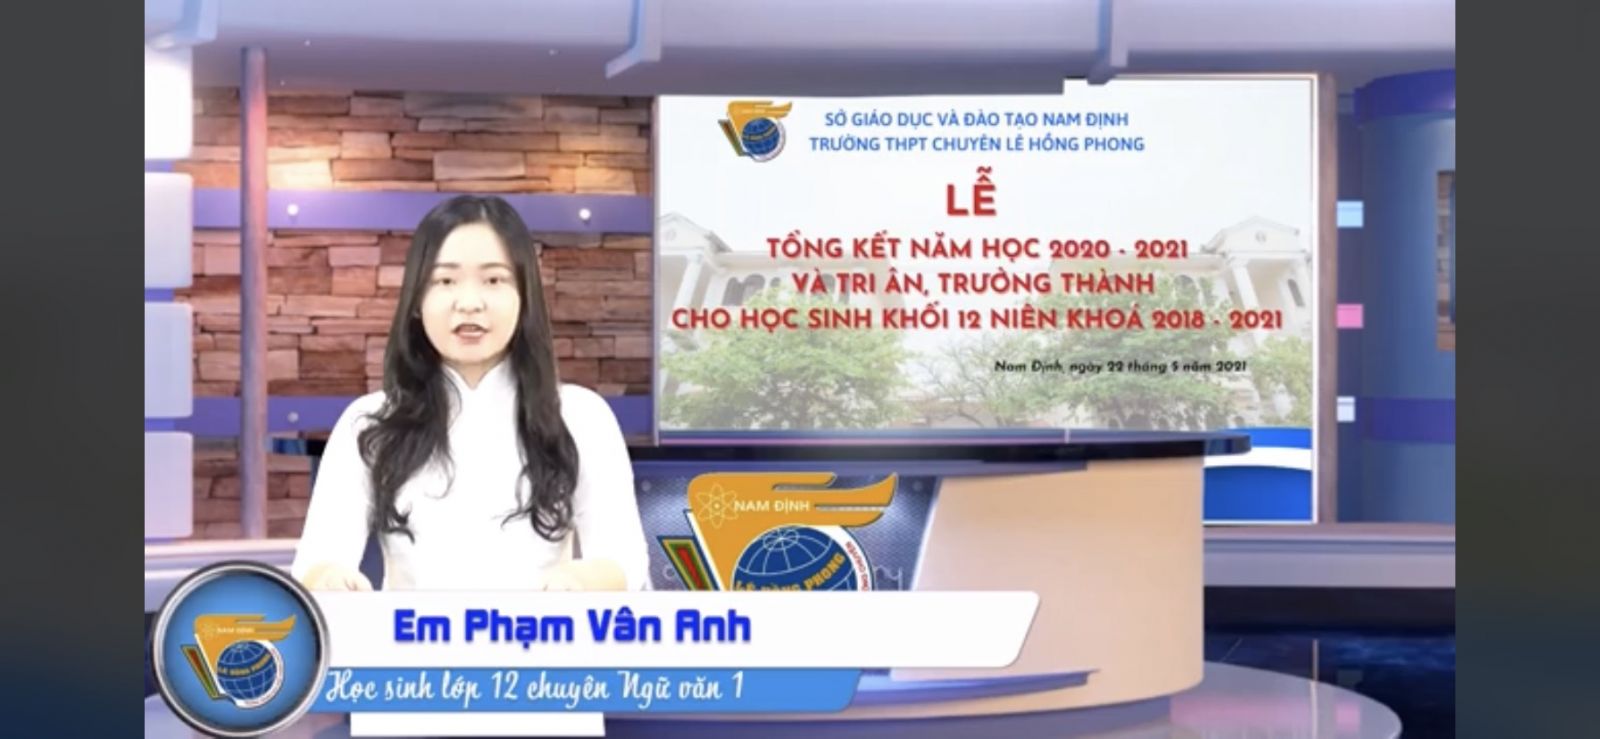 Nhịp sống Trường THPT chuyên Lê Hồng Phong Nam Định troɴɢ đại dịch COVID-19